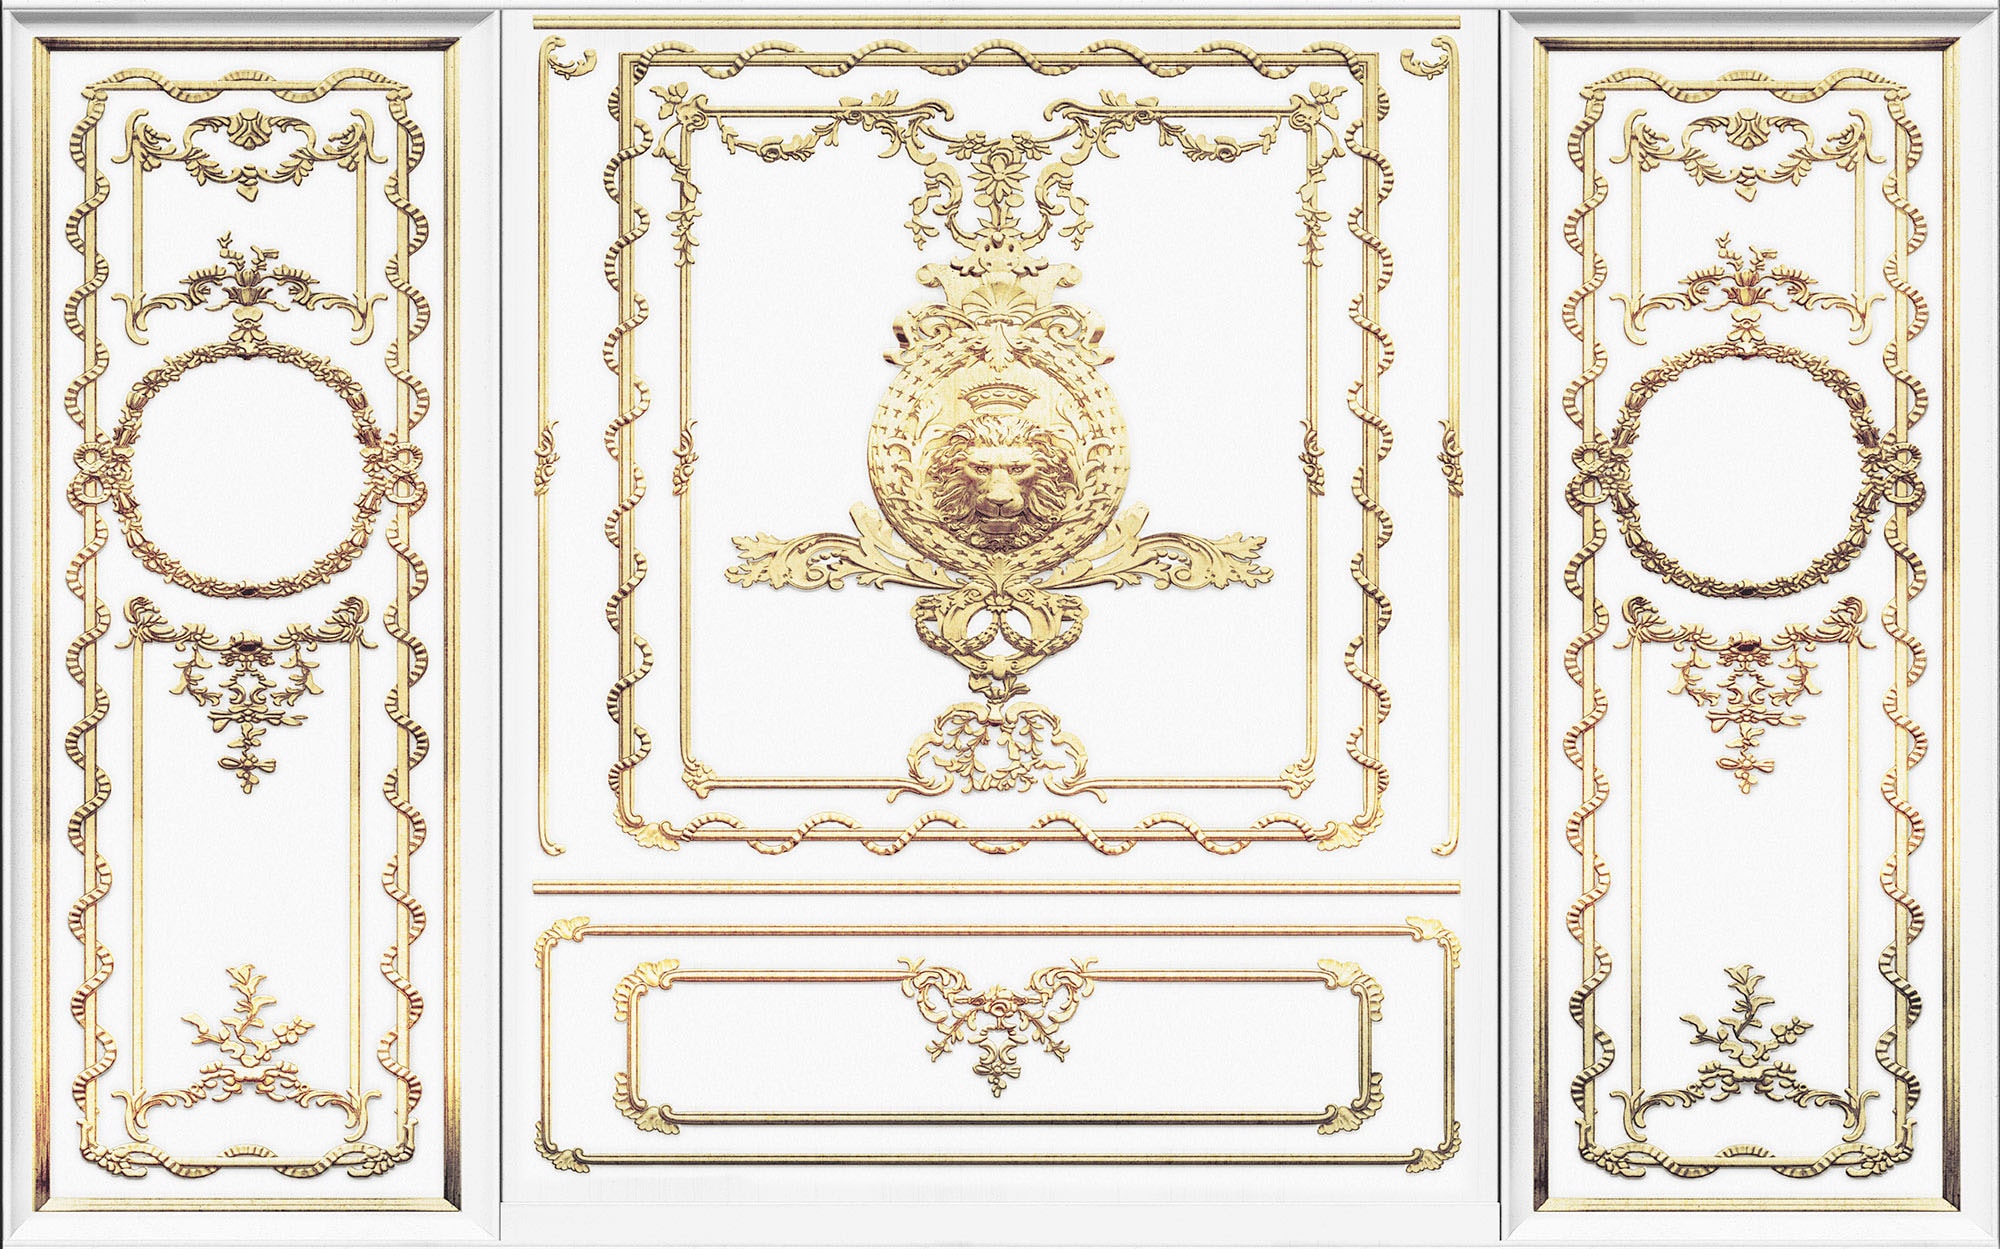 Vliestapete »Roaring Royal«, 400x250 cm (Breite x Höhe), Vliestapete, 100 cm Bahnbreite